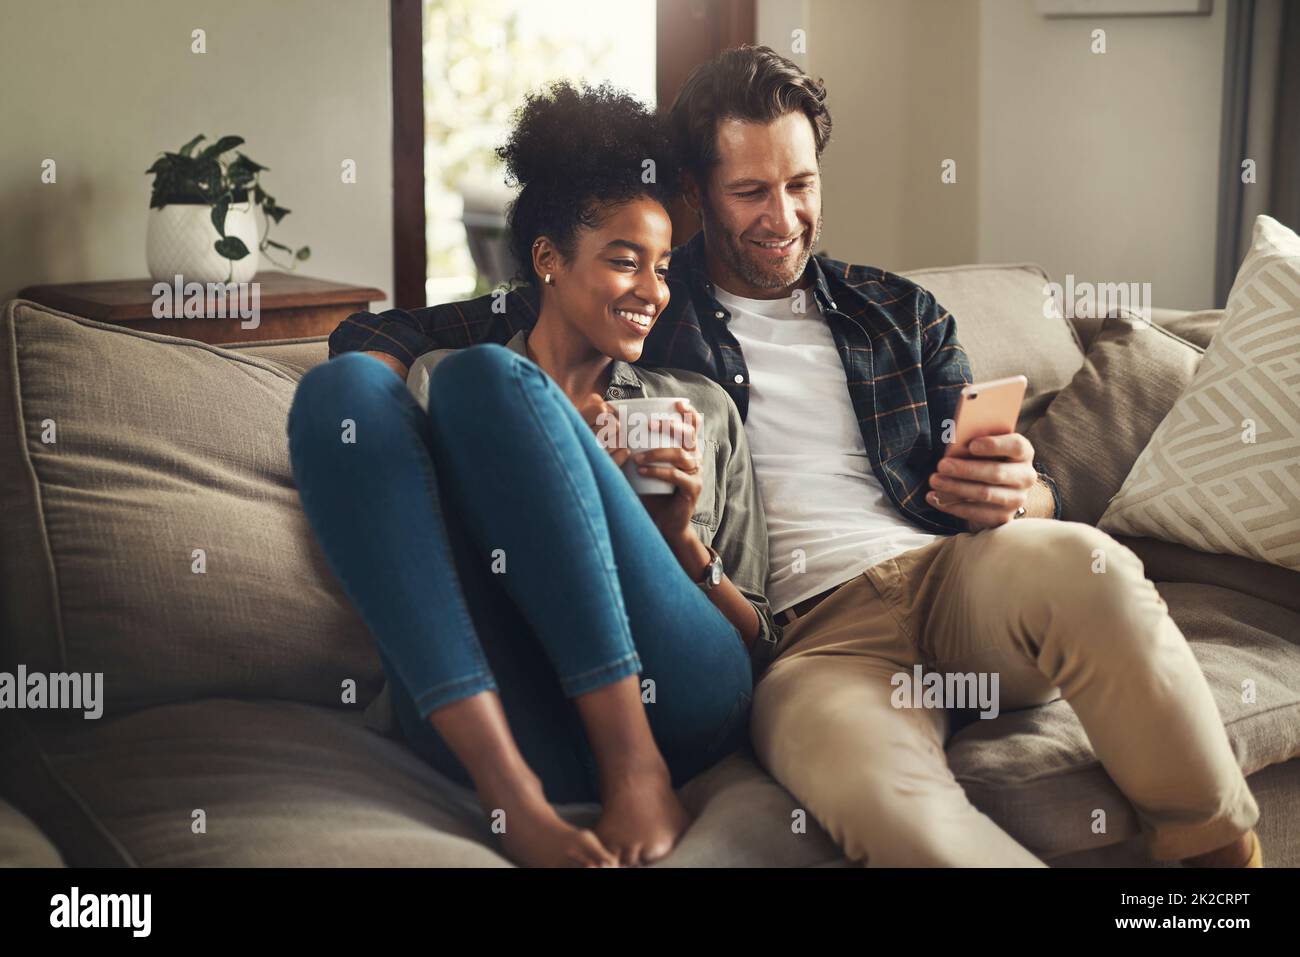 Chiudete la porta, lasciate il mondo fuori. Scatto di una giovane coppia felice utilizzando un tablet digitale mentre si rilassa su un divano nel salotto di casa. Foto Stock